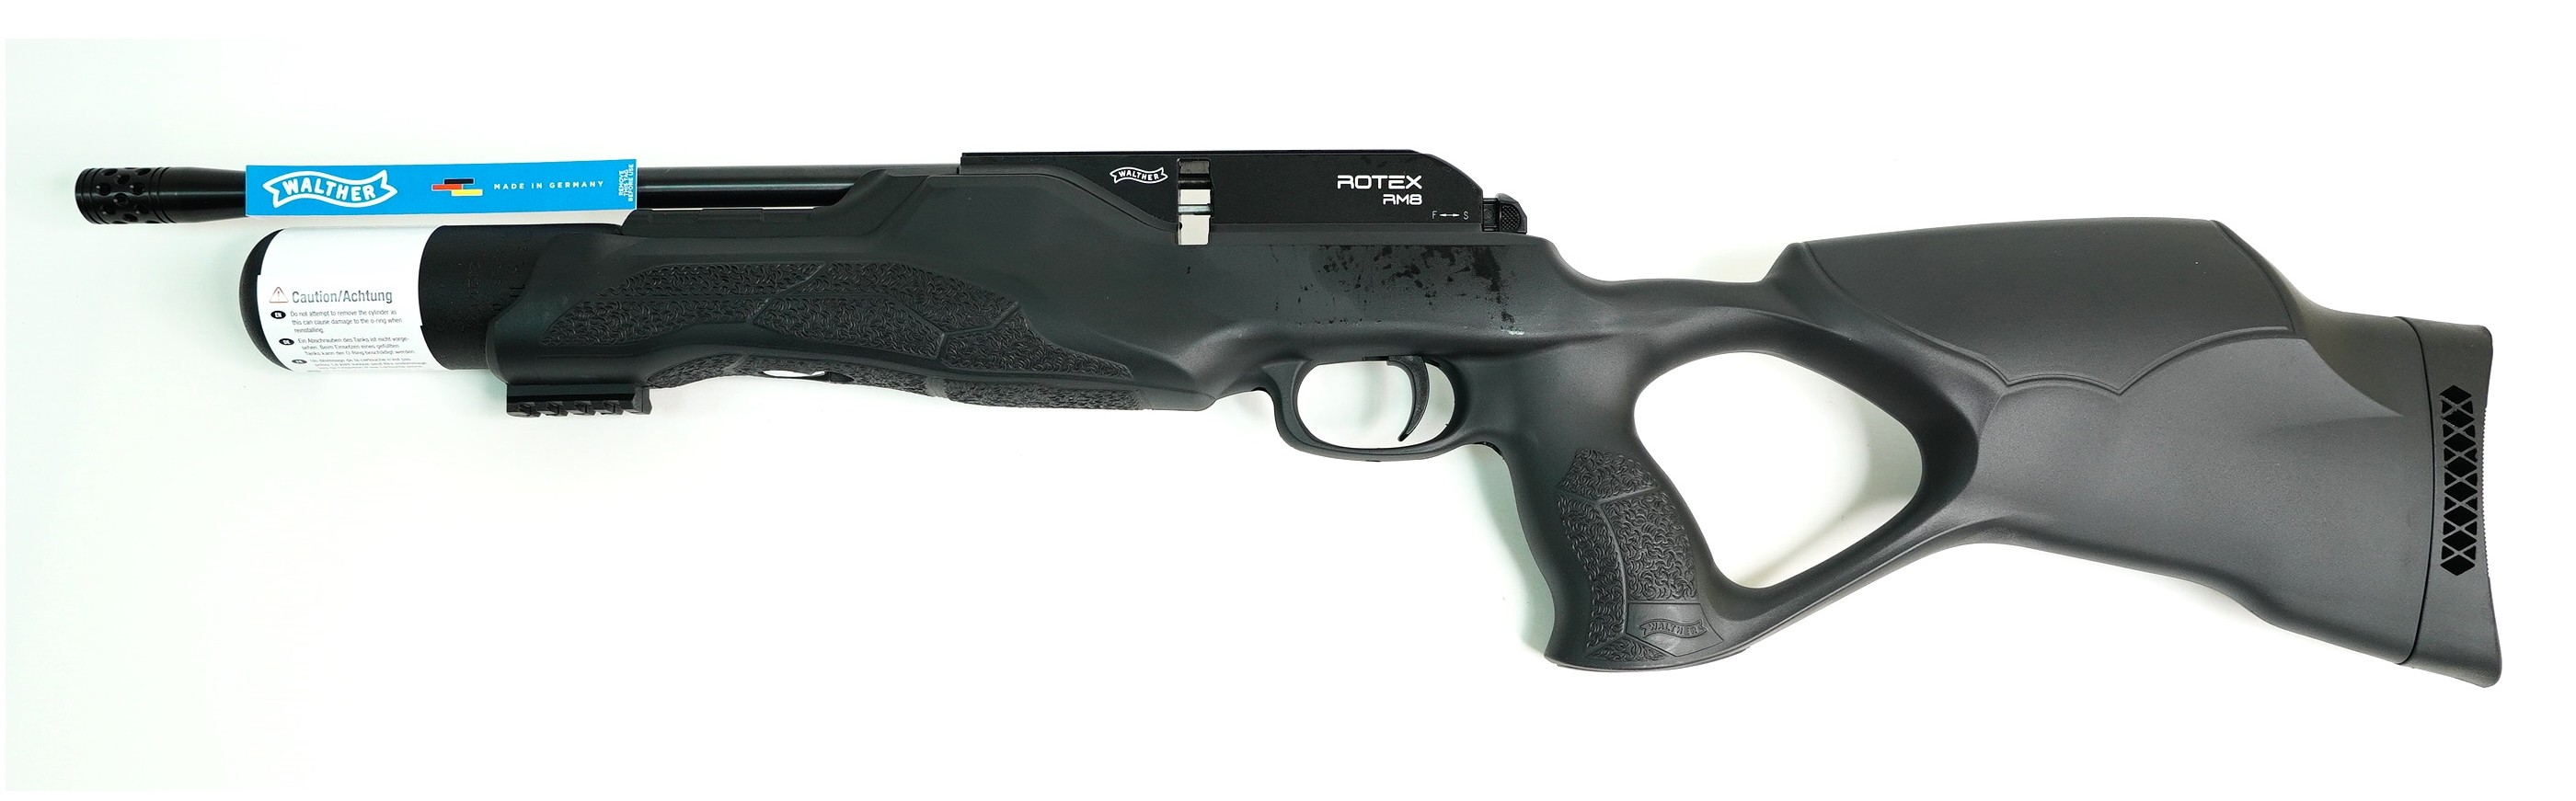 Пневматическая винтовка Umarex Walther Rotex RM8 Varmint 5,5 мм (PCP, 3 Дж), изображение 2